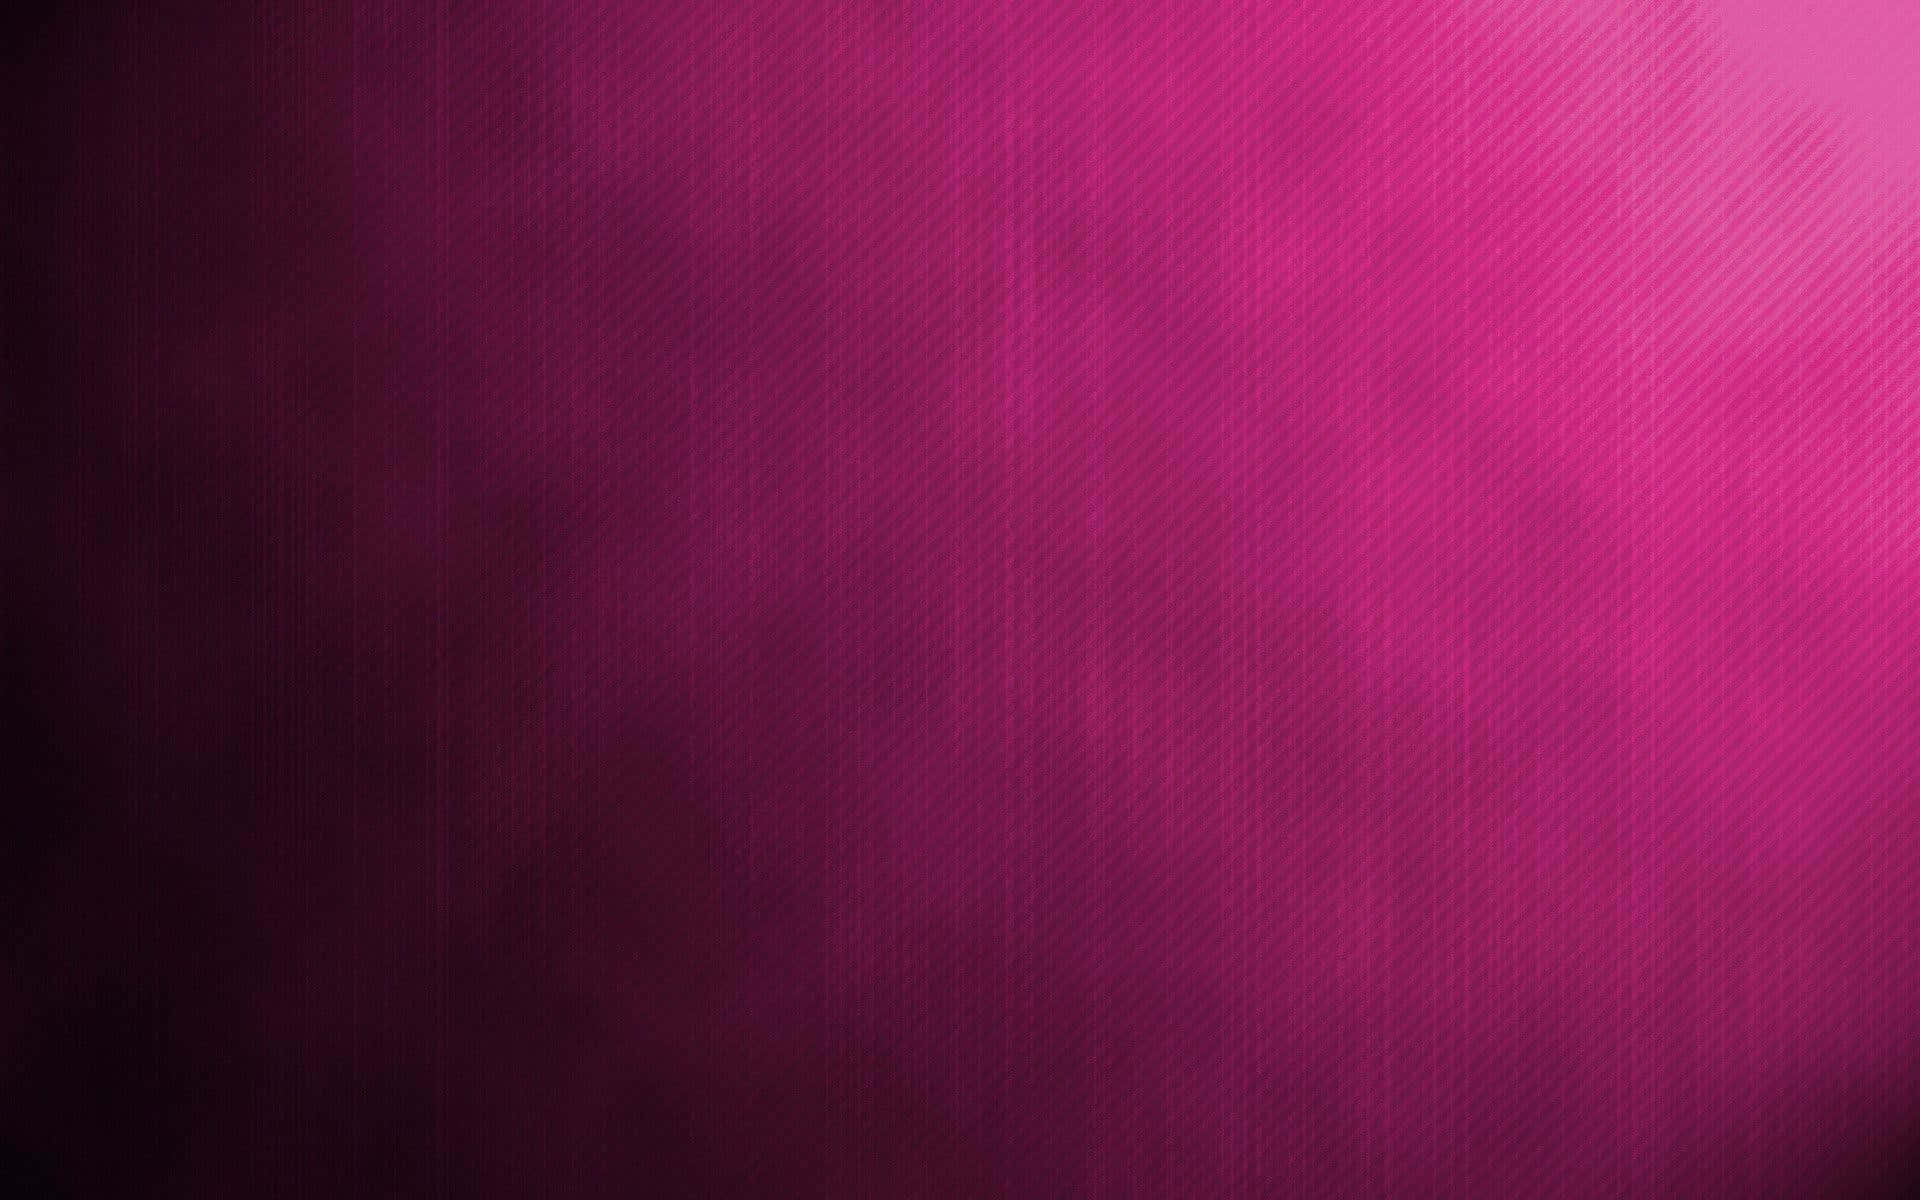 An Abstract Blur of Dark Pink Wallpaper